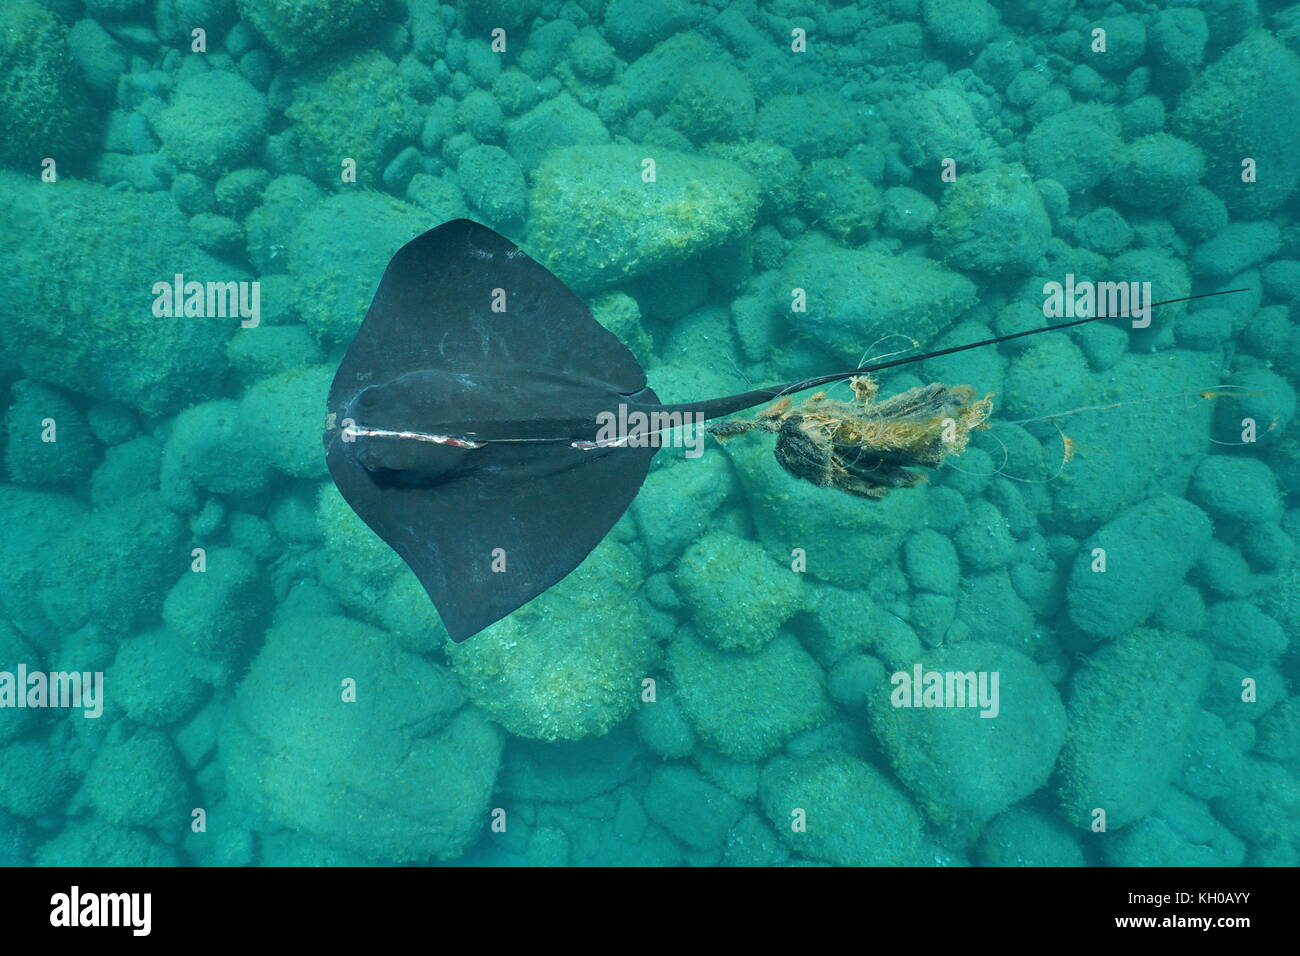 Unterwasser eine gemeinsame Stingray, dasyatis pastinaca, mit einer schweren Verletzung, in eine Angelschnur, von oben gesehen, Mittelmeer, Spanien Stockfoto